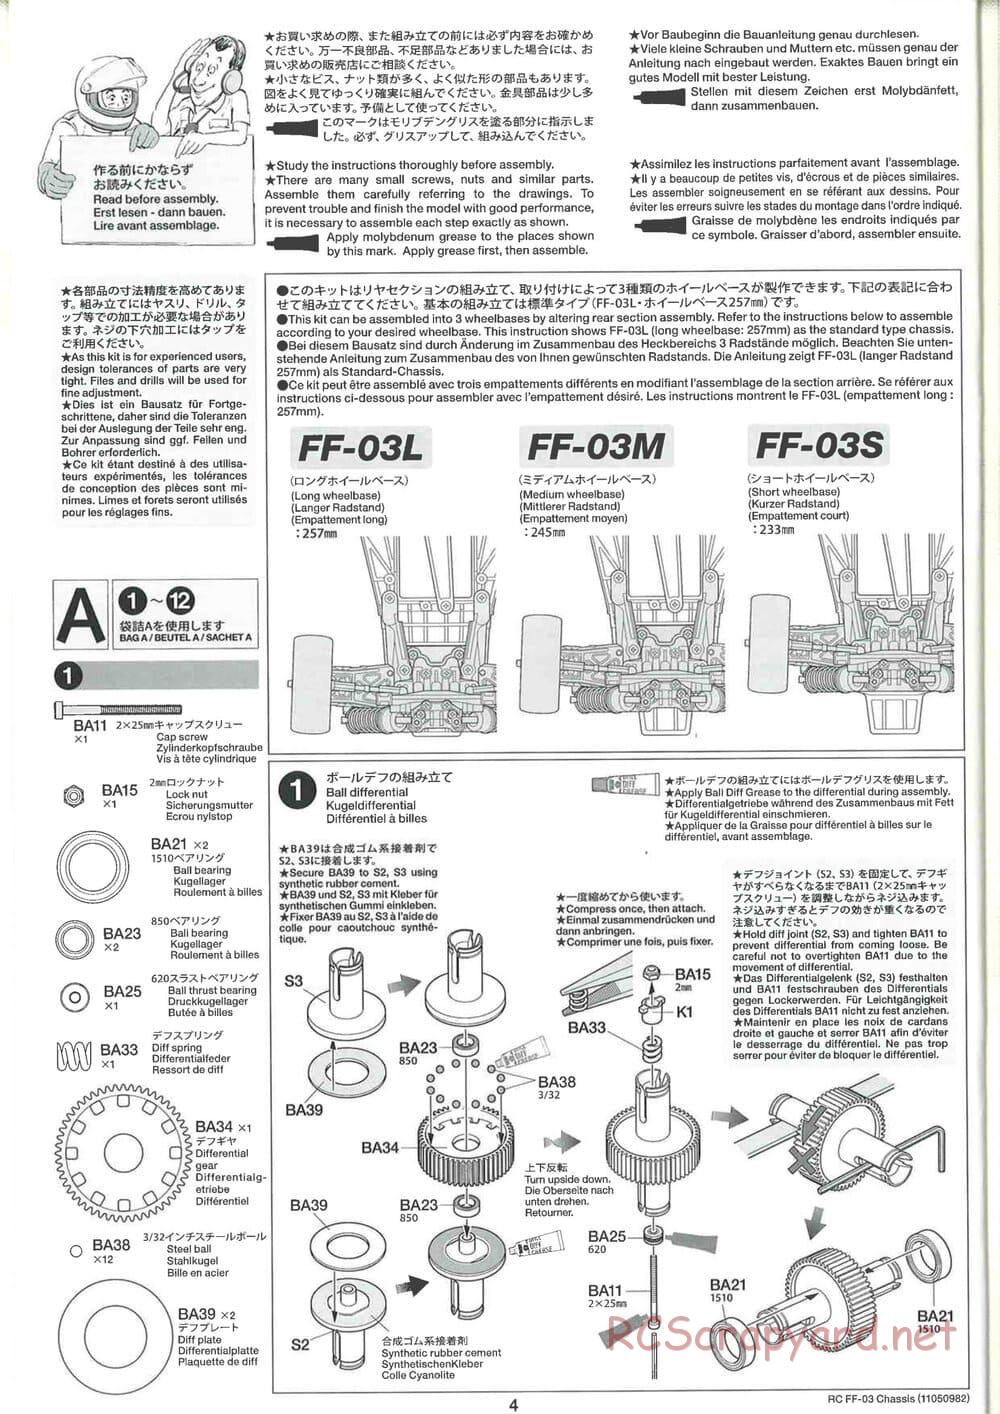 Tamiya - Honda Accord Aero Custom - FF-03 Chassis - Manual - Page 4